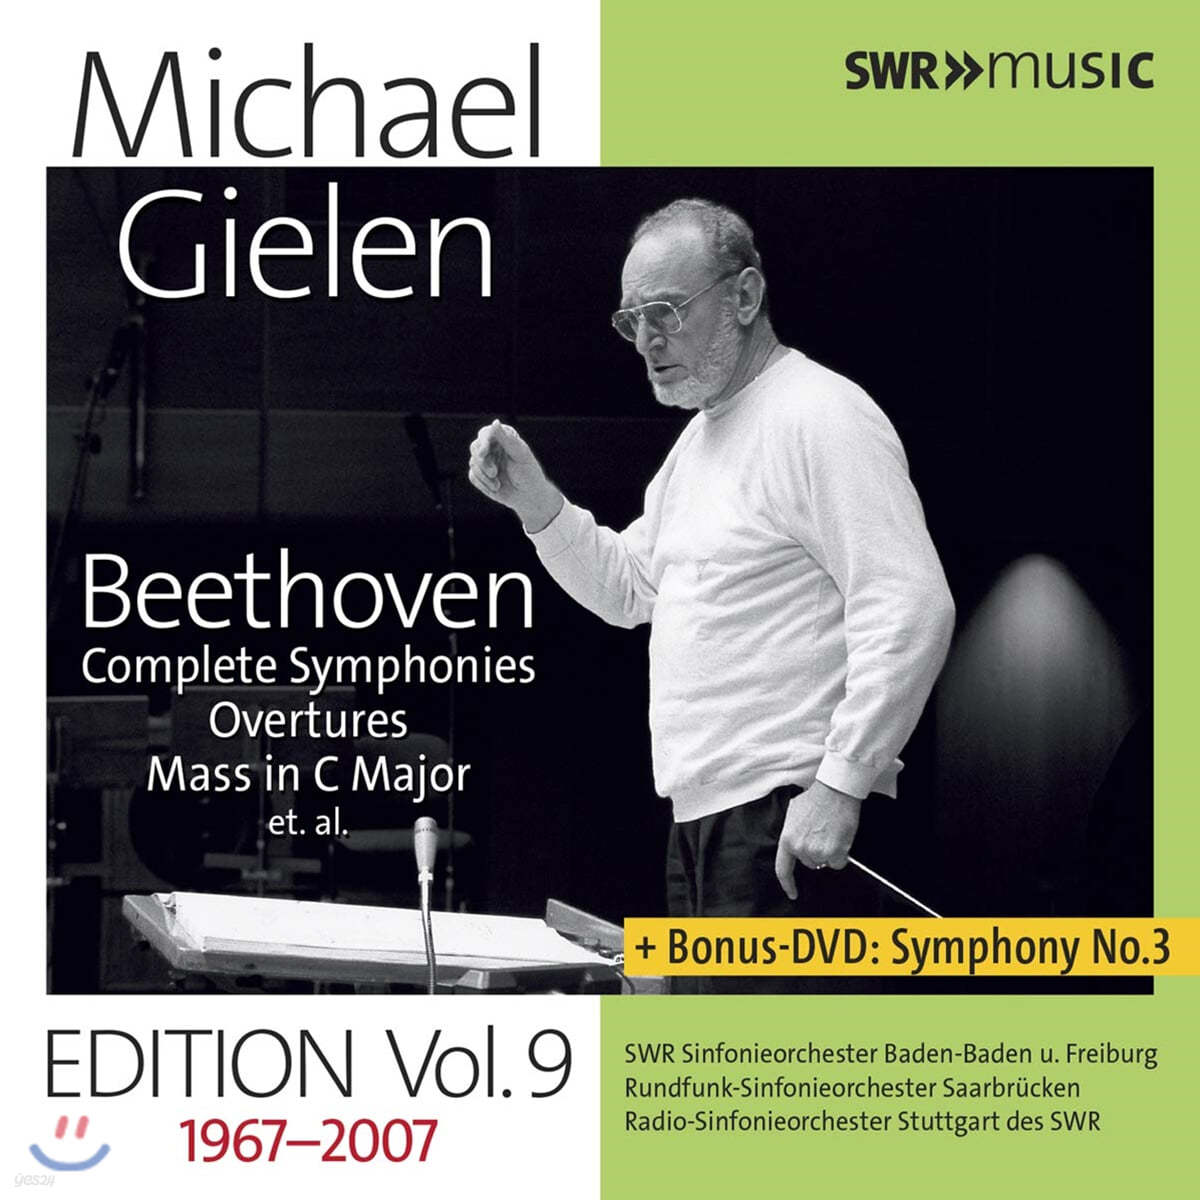 미하엘 길렌 에디션 9집 - 베토벤: 교향곡 전곡 (Michael Gielen Edition Vol. 9 1967-2007) 